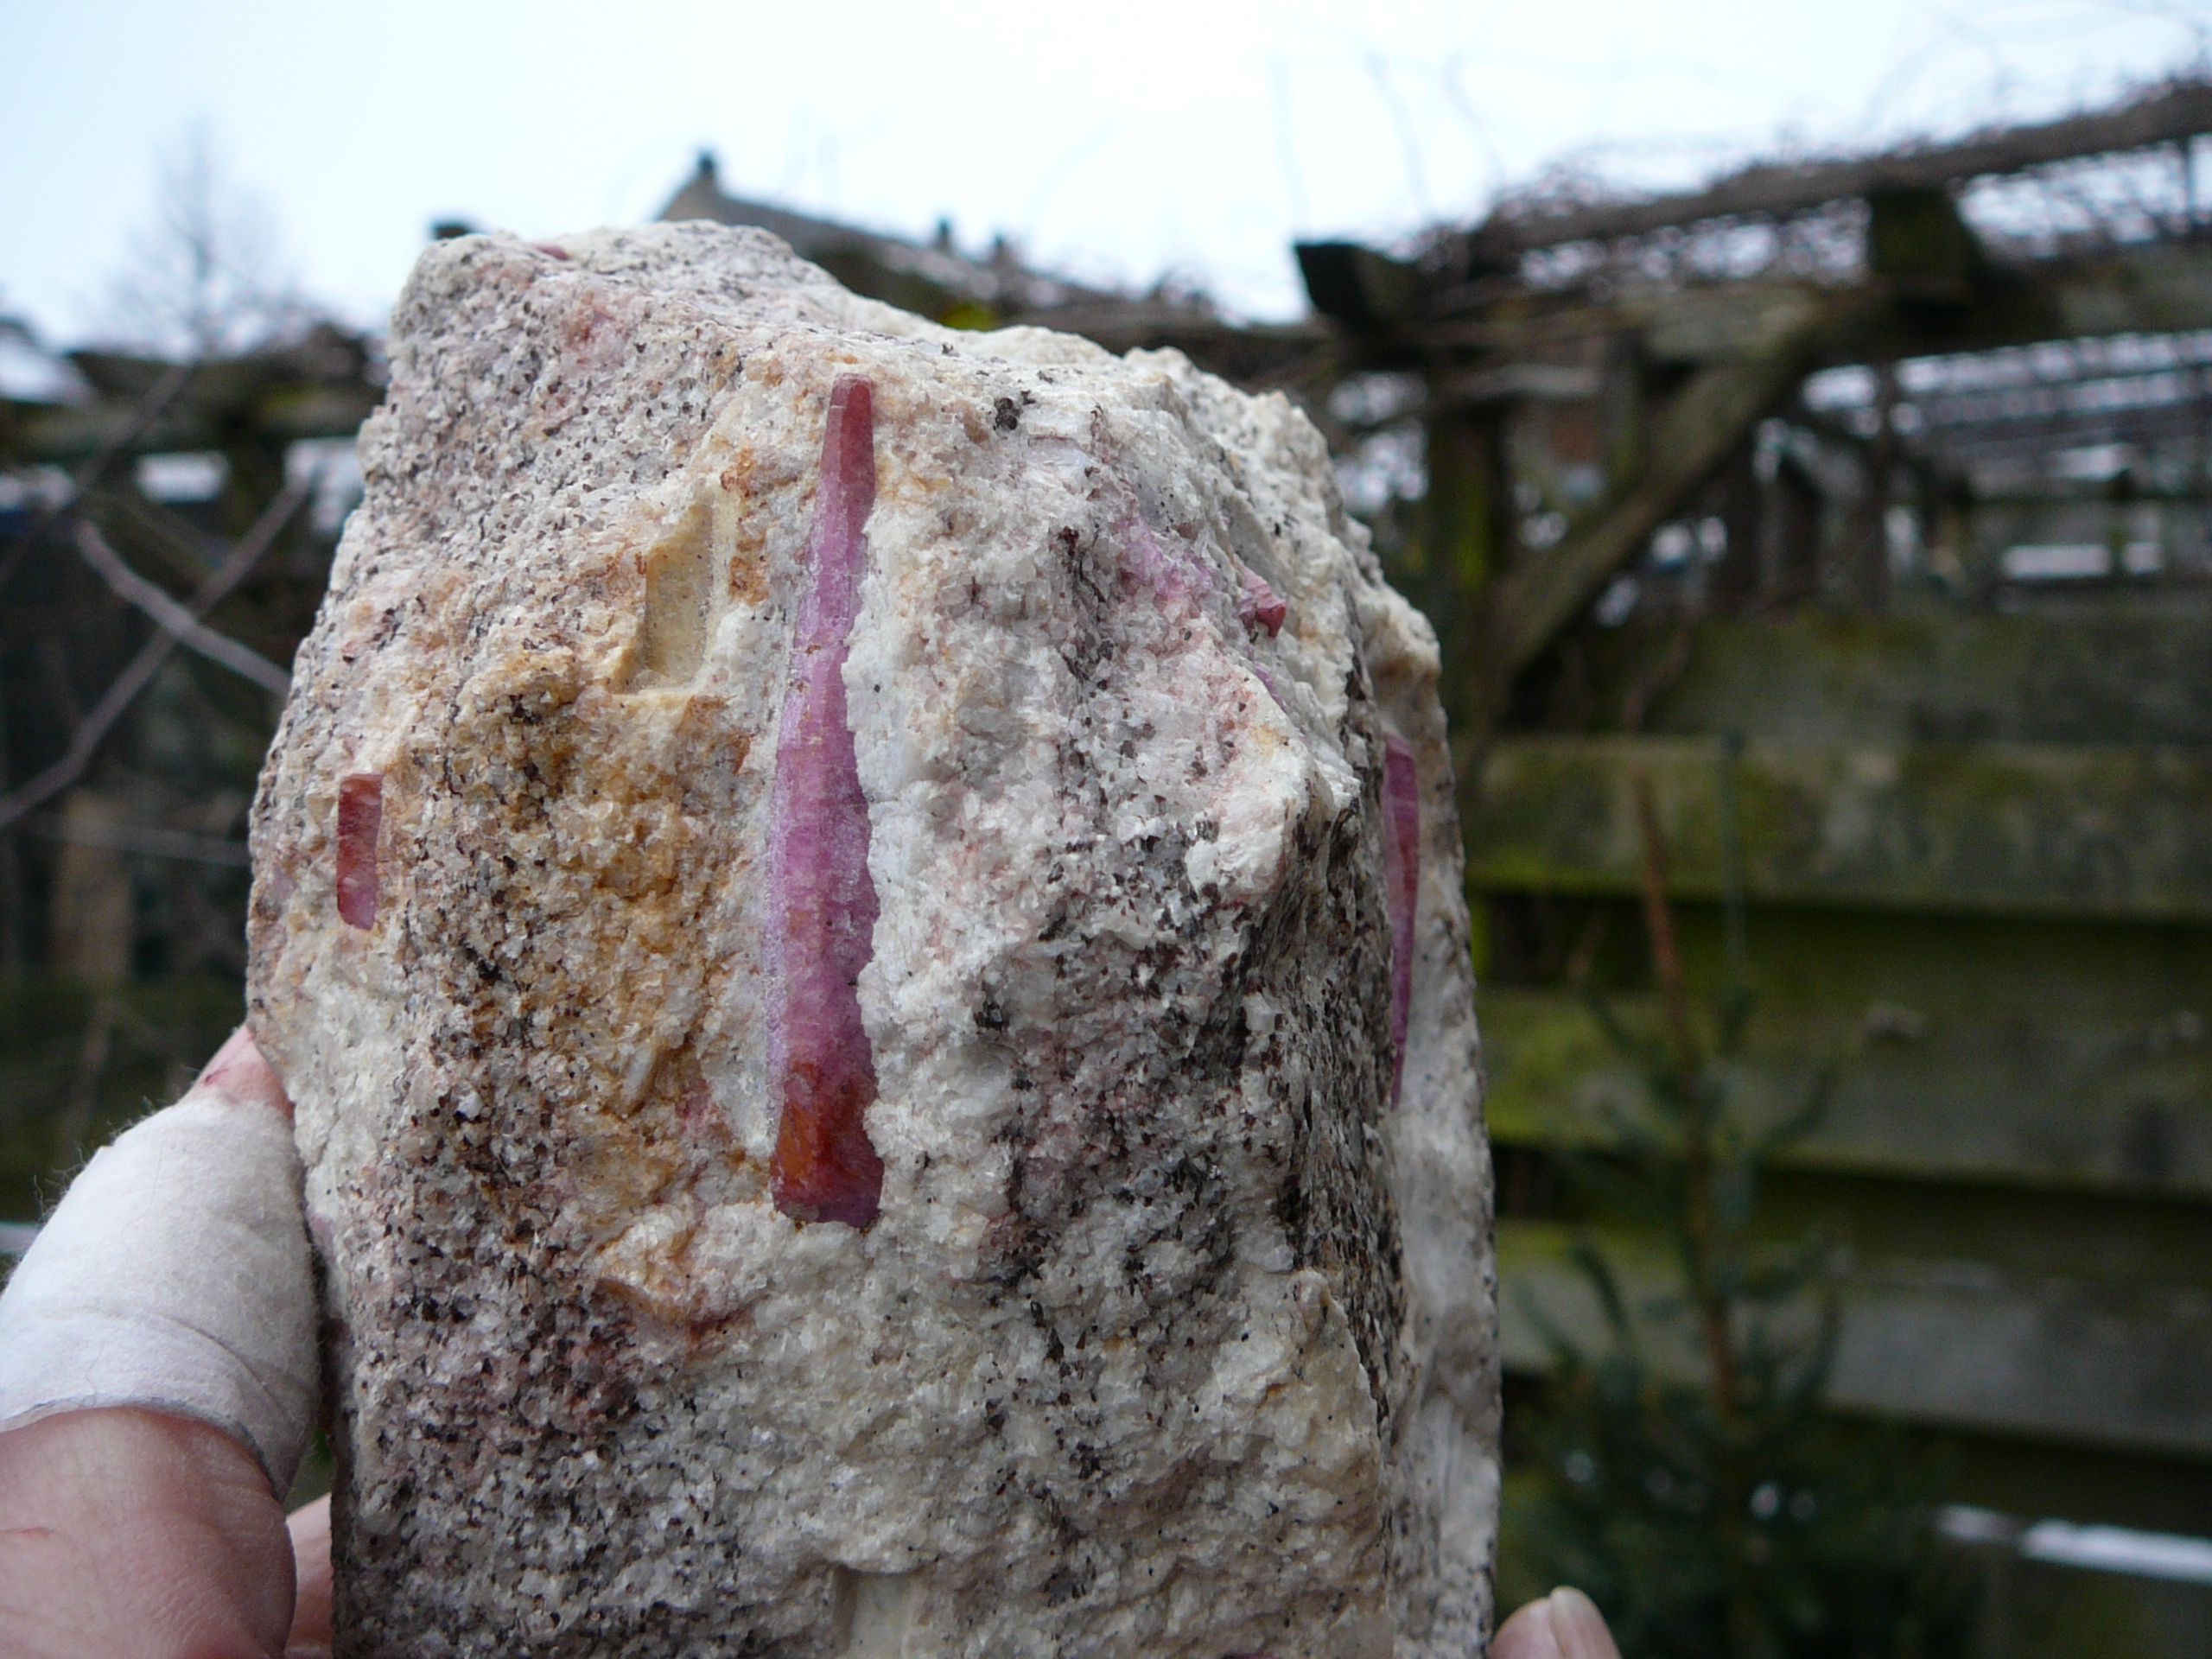 Red corundum (ruby) crystals embedded in migmatite